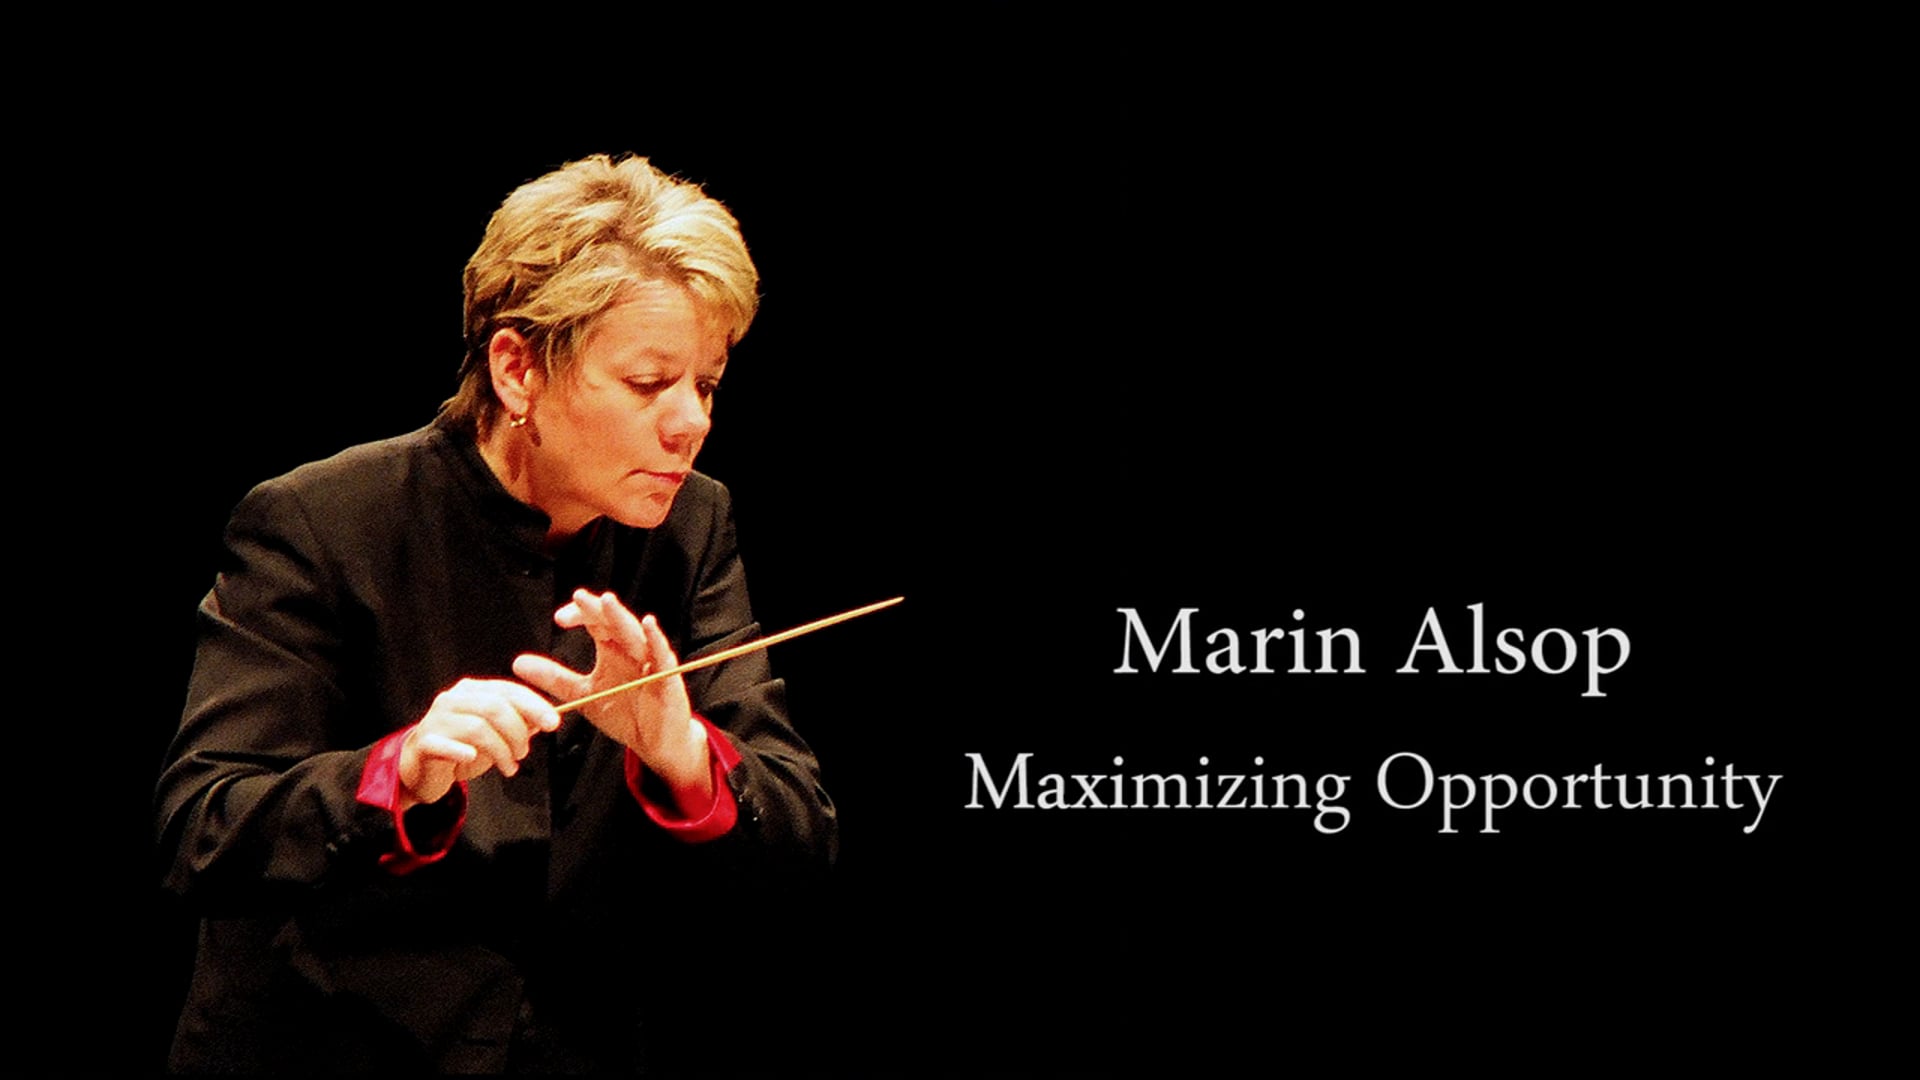 Marin Alsop: Maximizing Opportunity